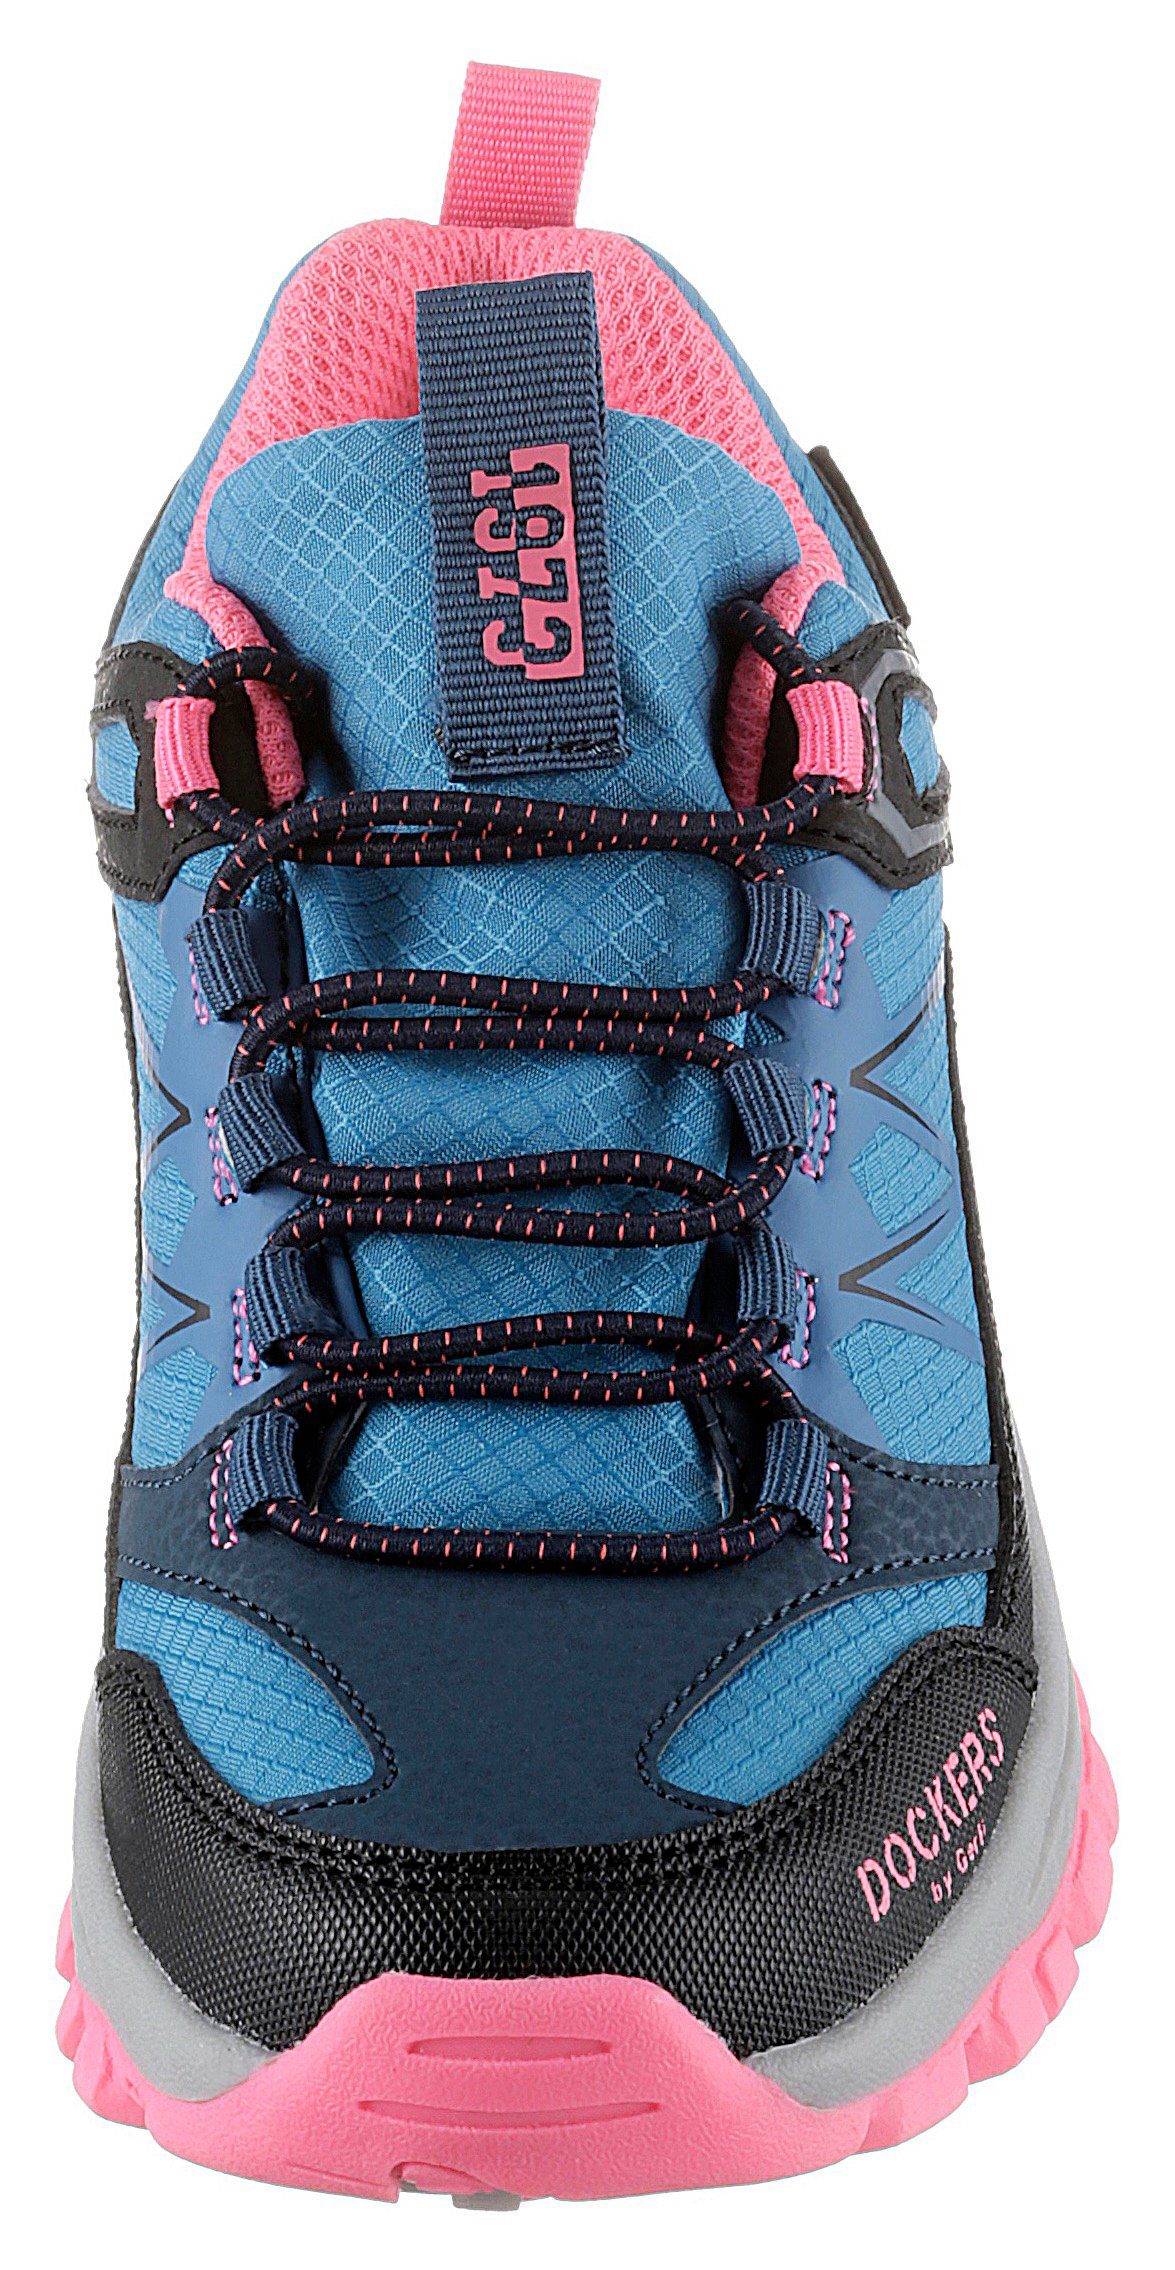 Dockers by Gerli Sneaker Schnellverschluss mit Slip-On blau-schwarz-pink